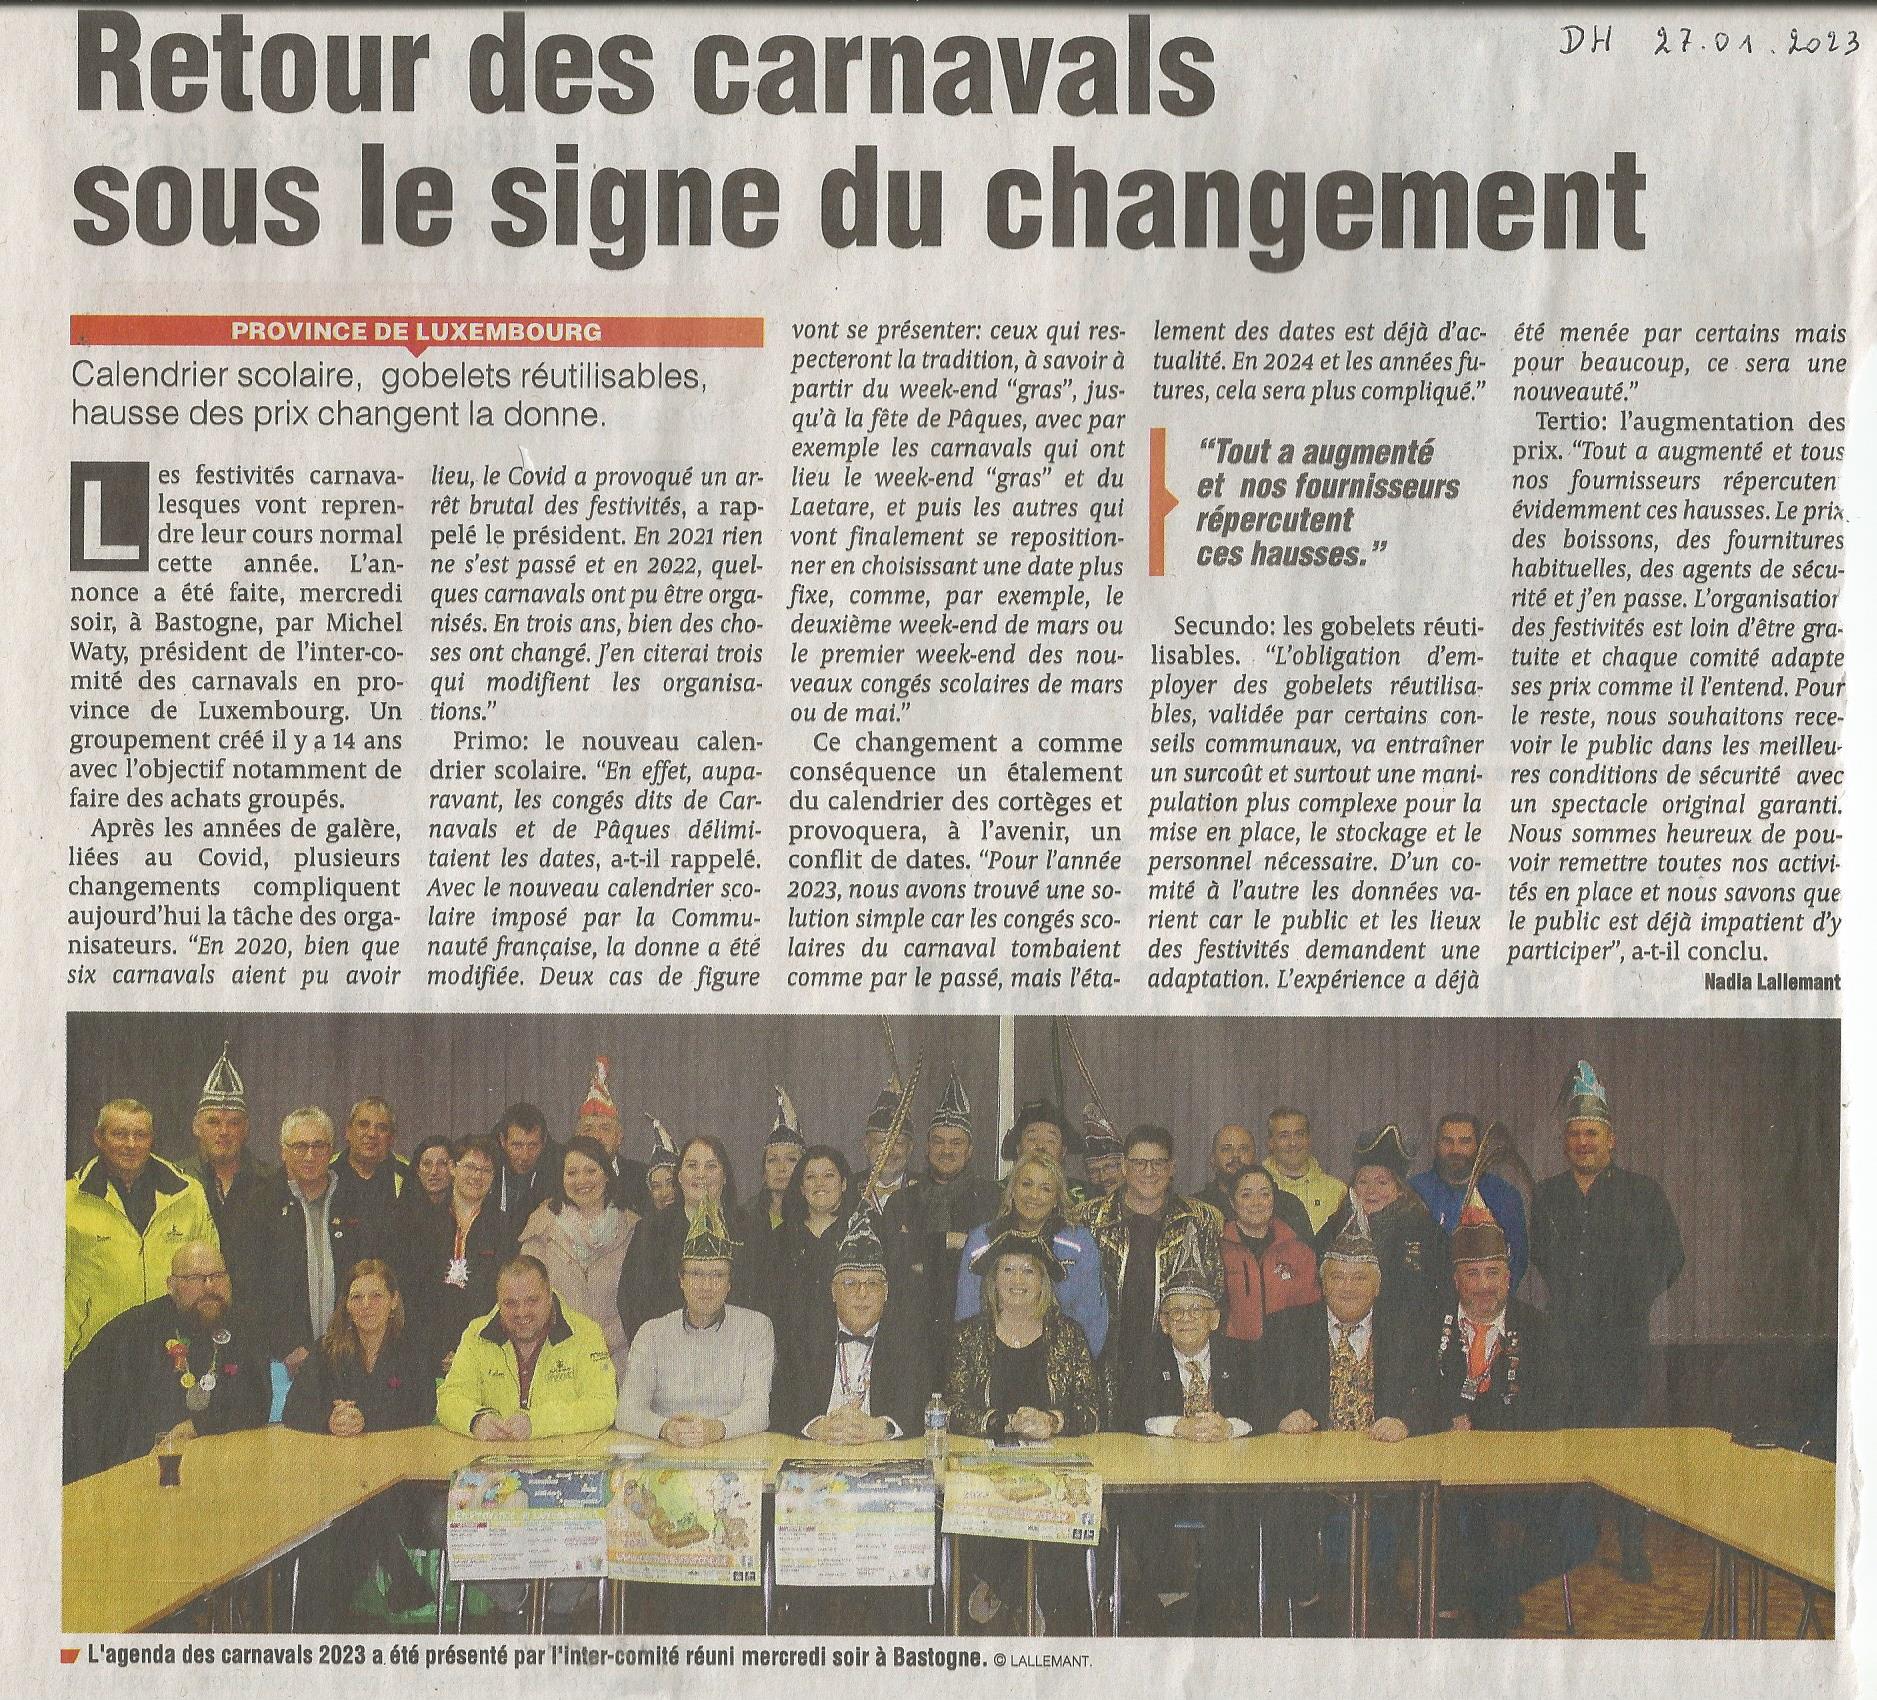 Carnaval de Martelange 2023, La revue de presse de Jérôme 1er